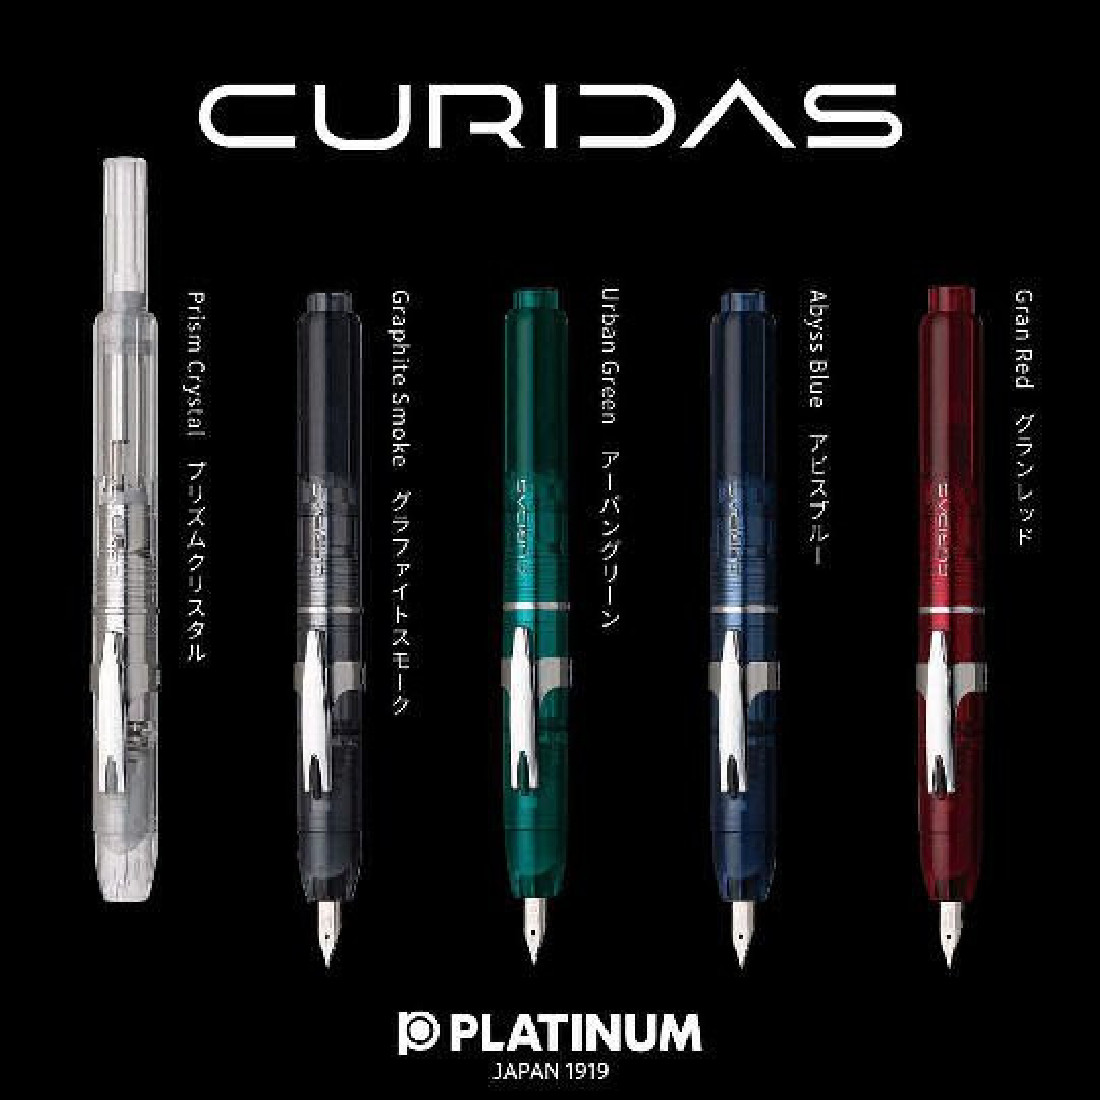 Platinum Curidas Prism Crystal Fountain Pen